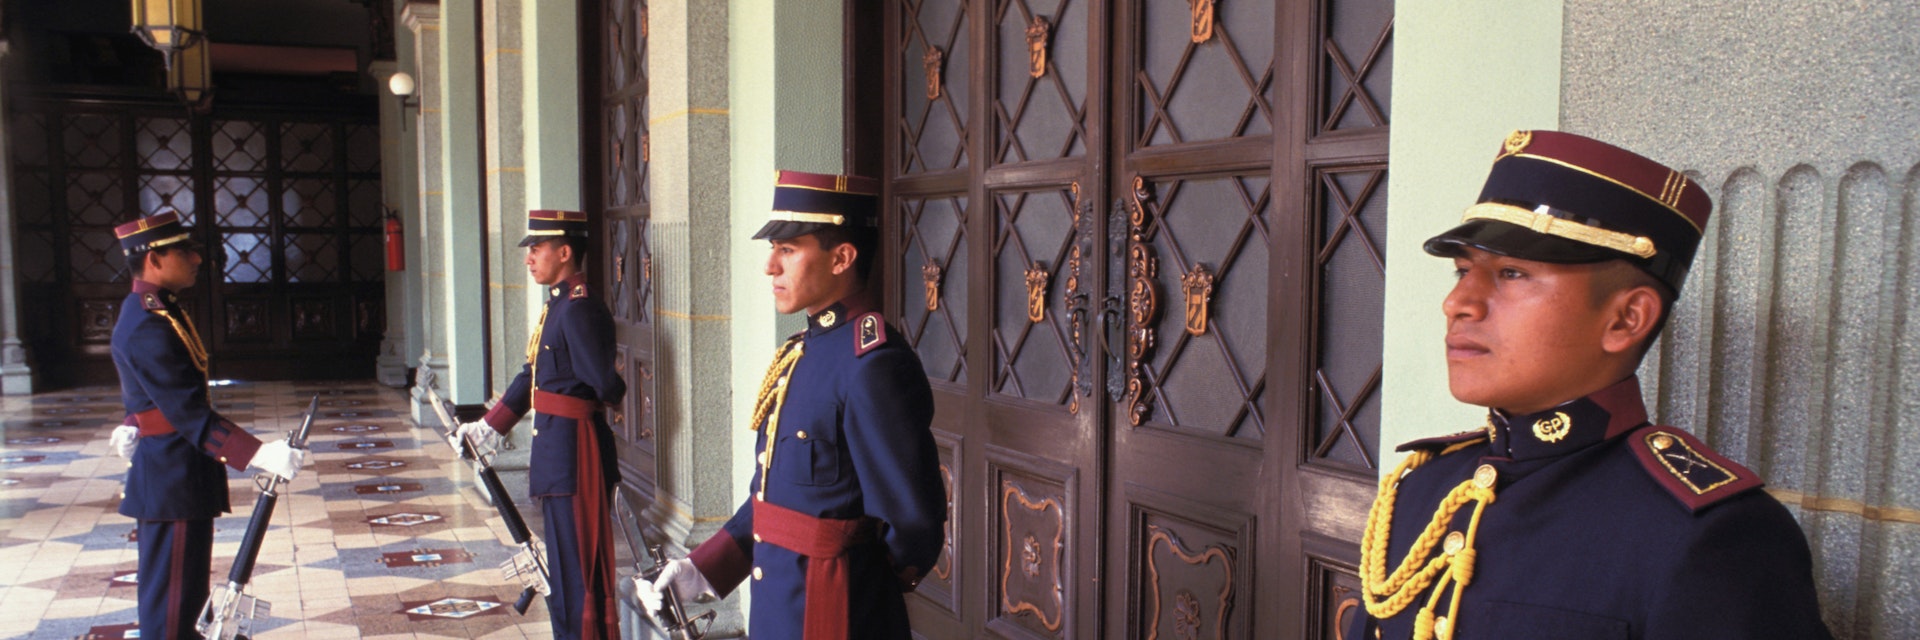 Honor guards at National Palace, Guatemala City, Guatemala